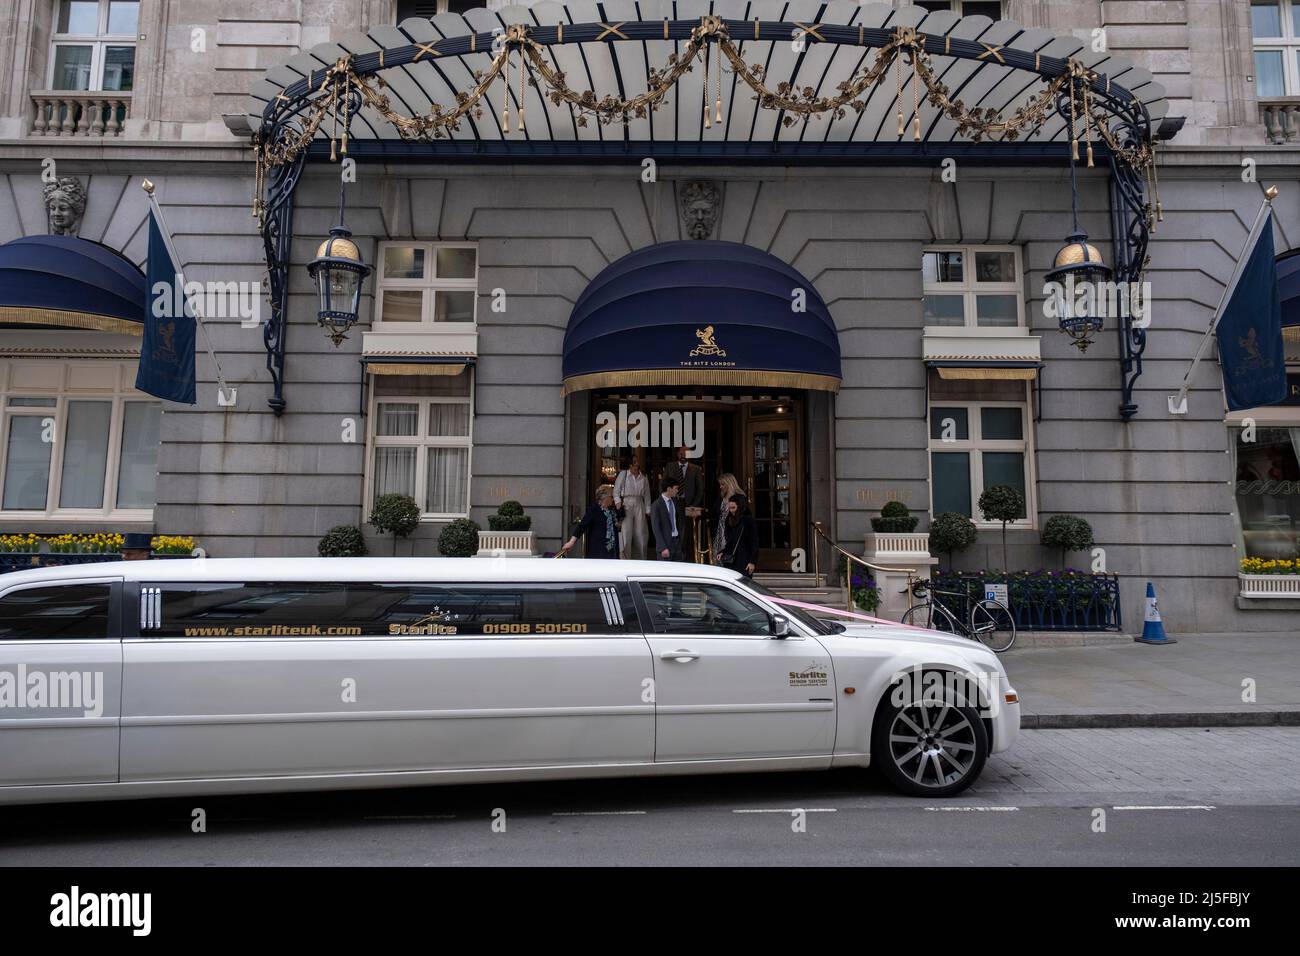 Limousine bianca stretch fuori dal Ritz Hotel il 13th aprile 2022 a Londra, Regno Unito. Il Ritz London è un hotel a 5 stelle classificato Grade II situato a Piccadilly, simbolo dell'alta società e del lusso. E' uno degli hotel piu' prestigiosi e conosciuti al mondo. Foto Stock